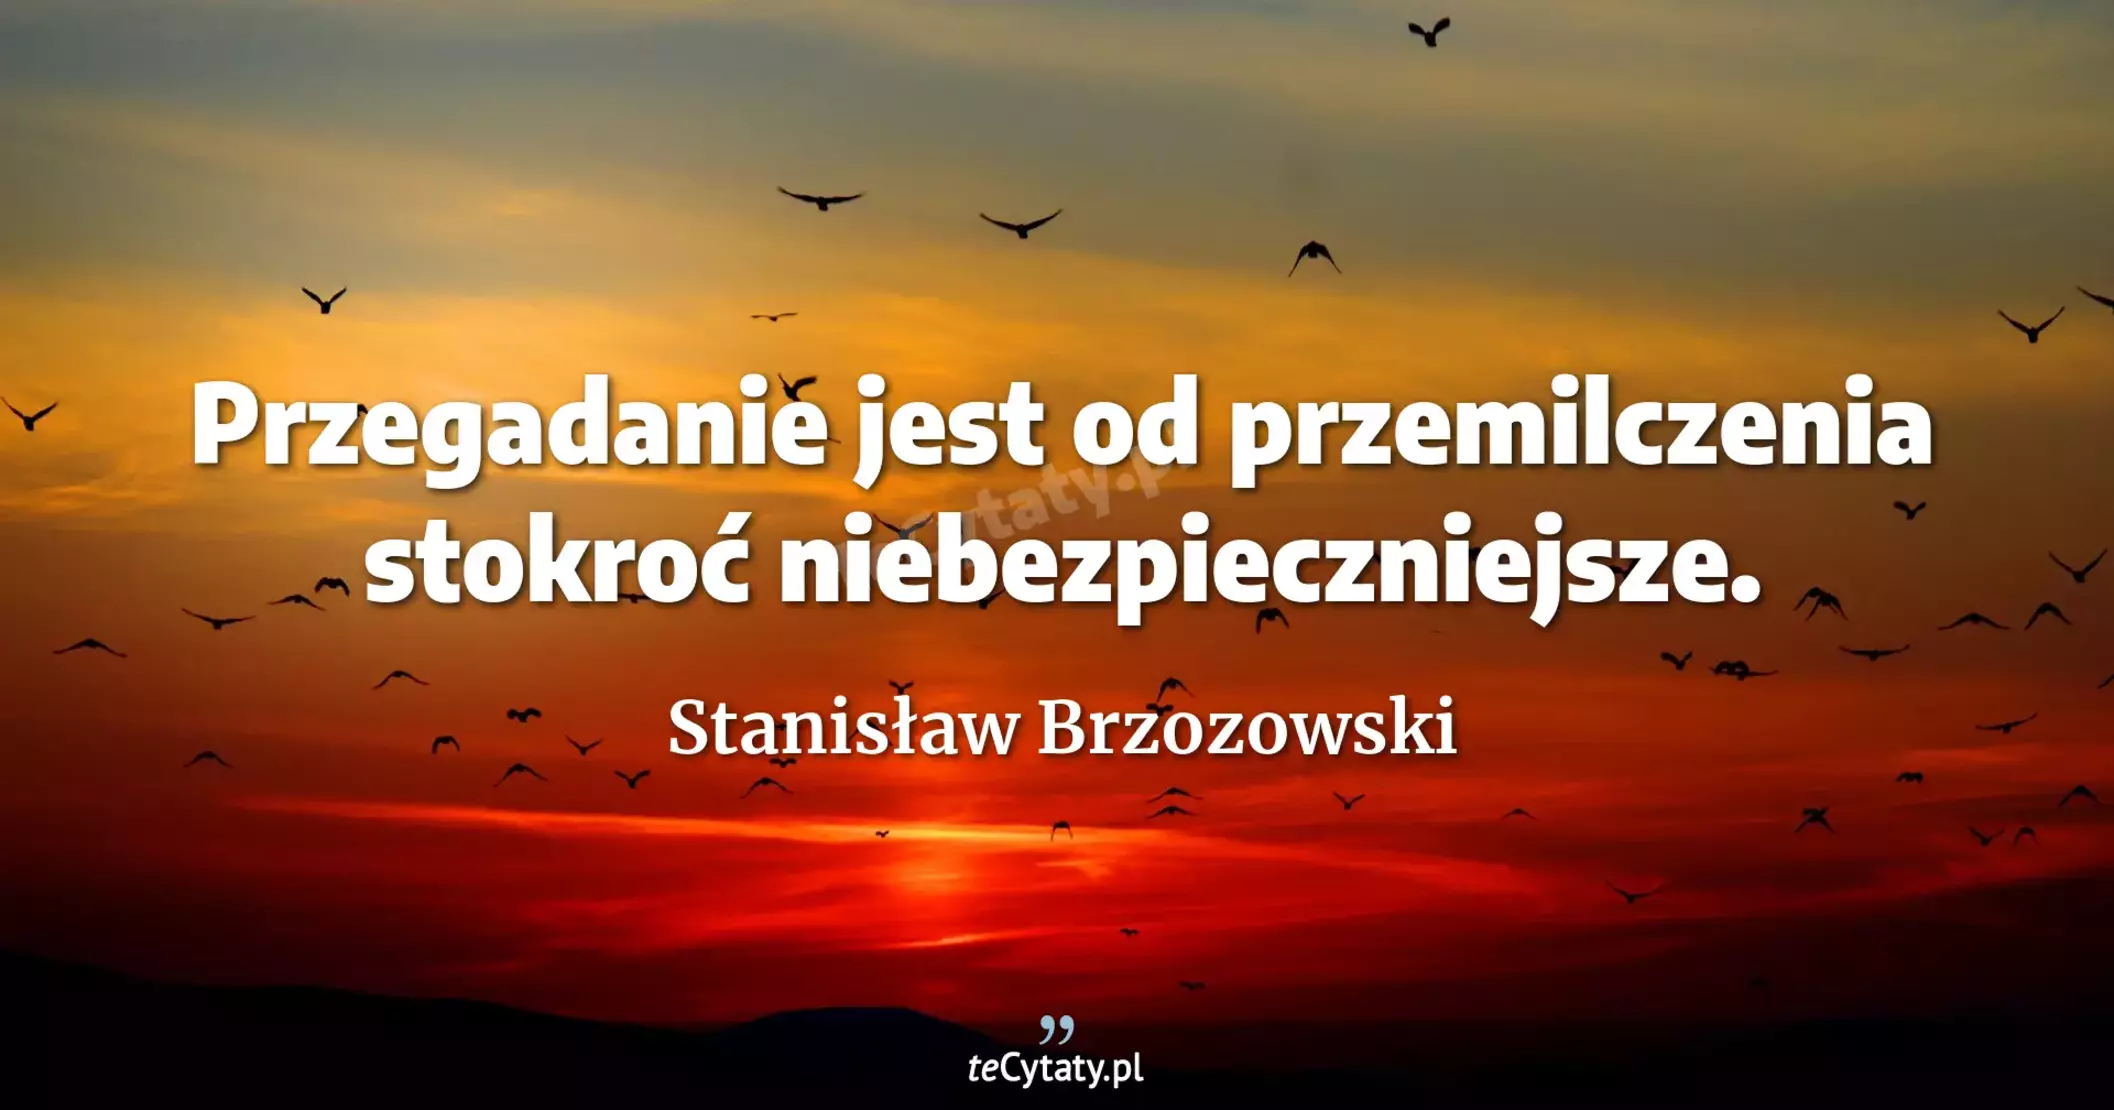 Przegadanie jest od przemilczenia stokroć niebezpieczniejsze. - Stanisław Brzozowski